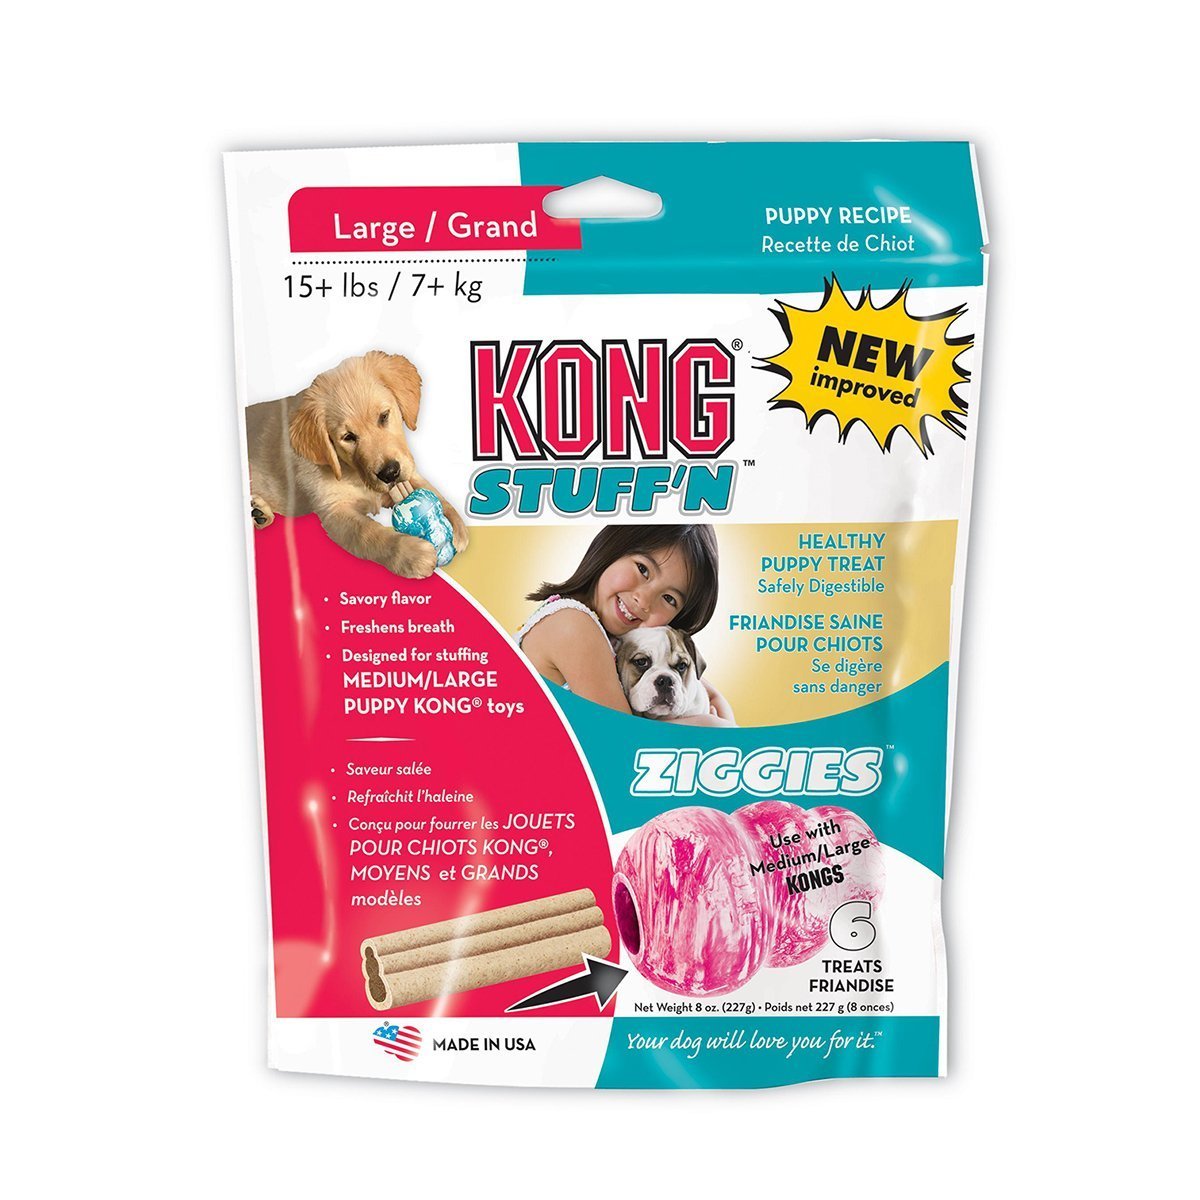 KONG Stuff N Puppy Ziggies - Woonona Petfood & Produce